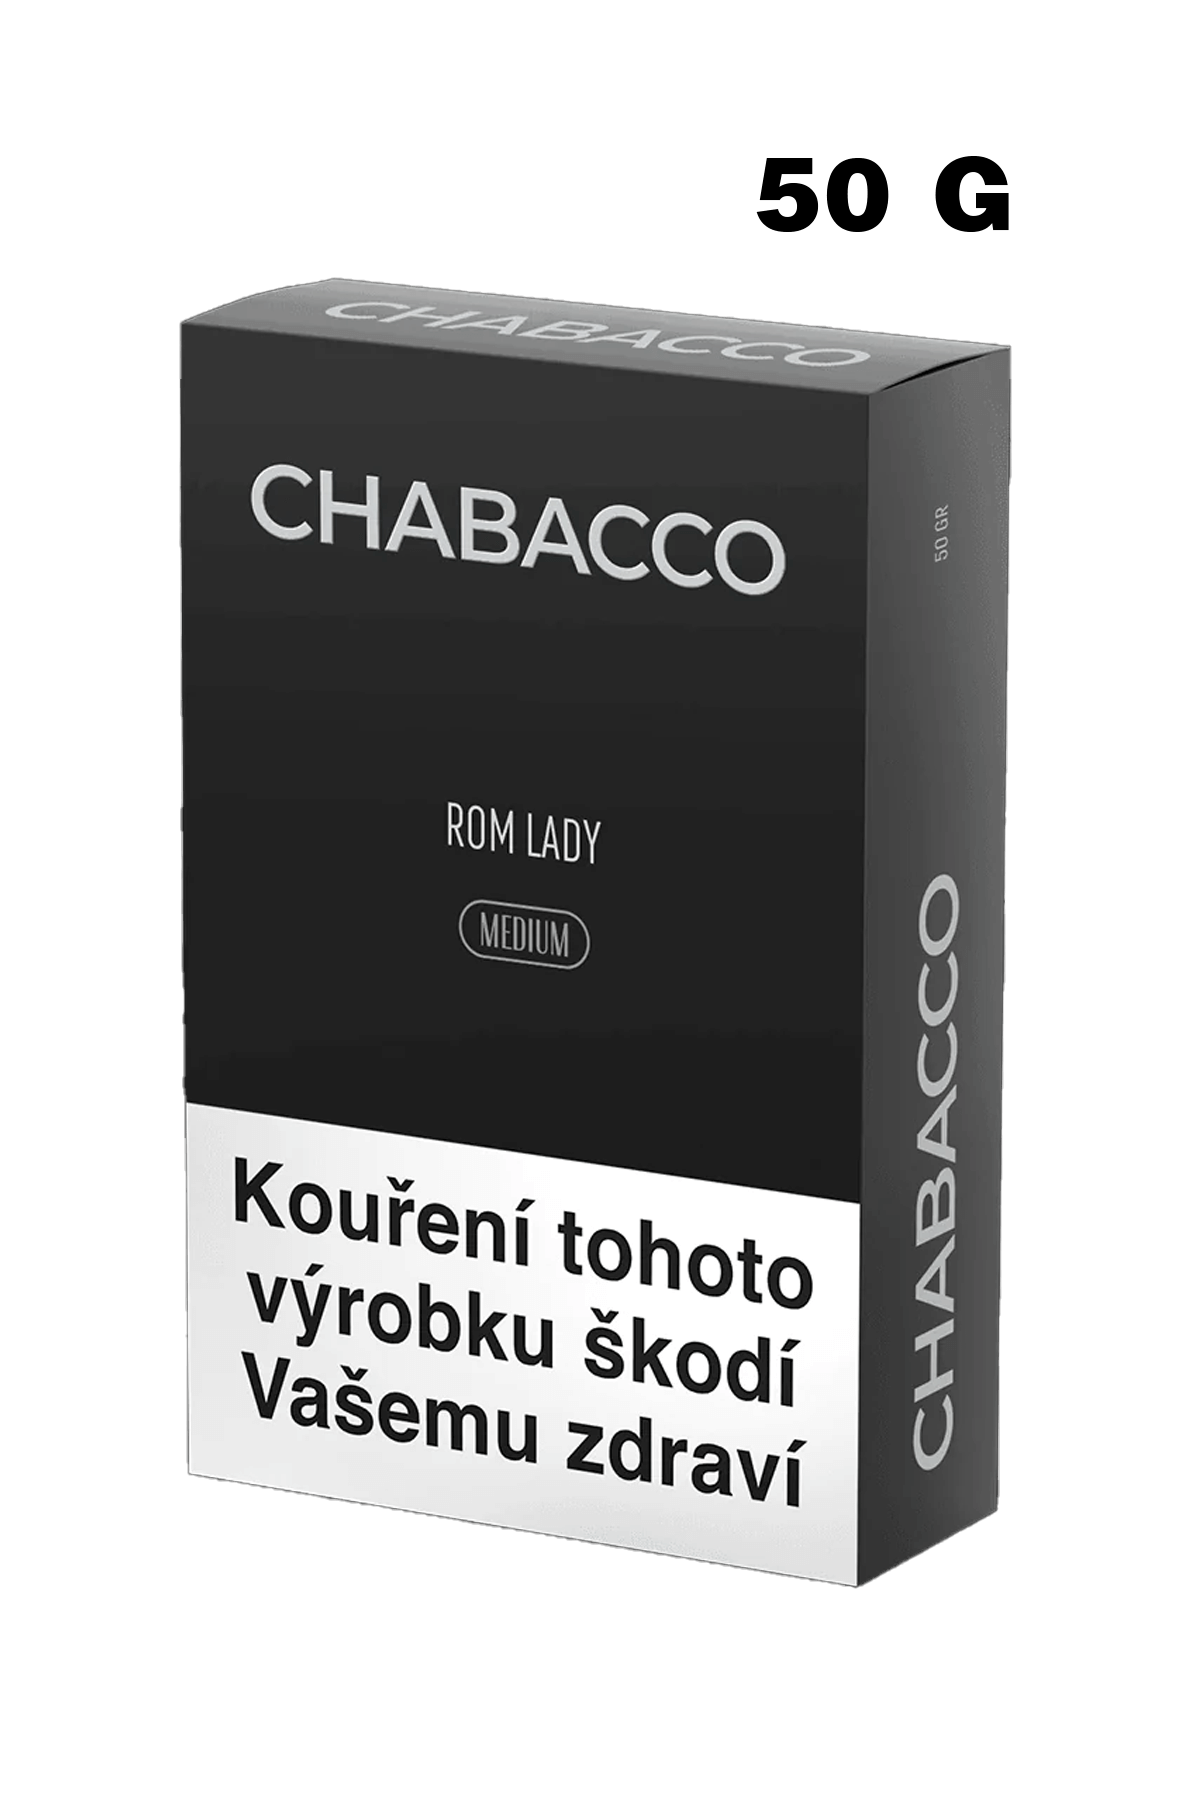 Tobacco - Chabacco Medium 50g - Rom Lady